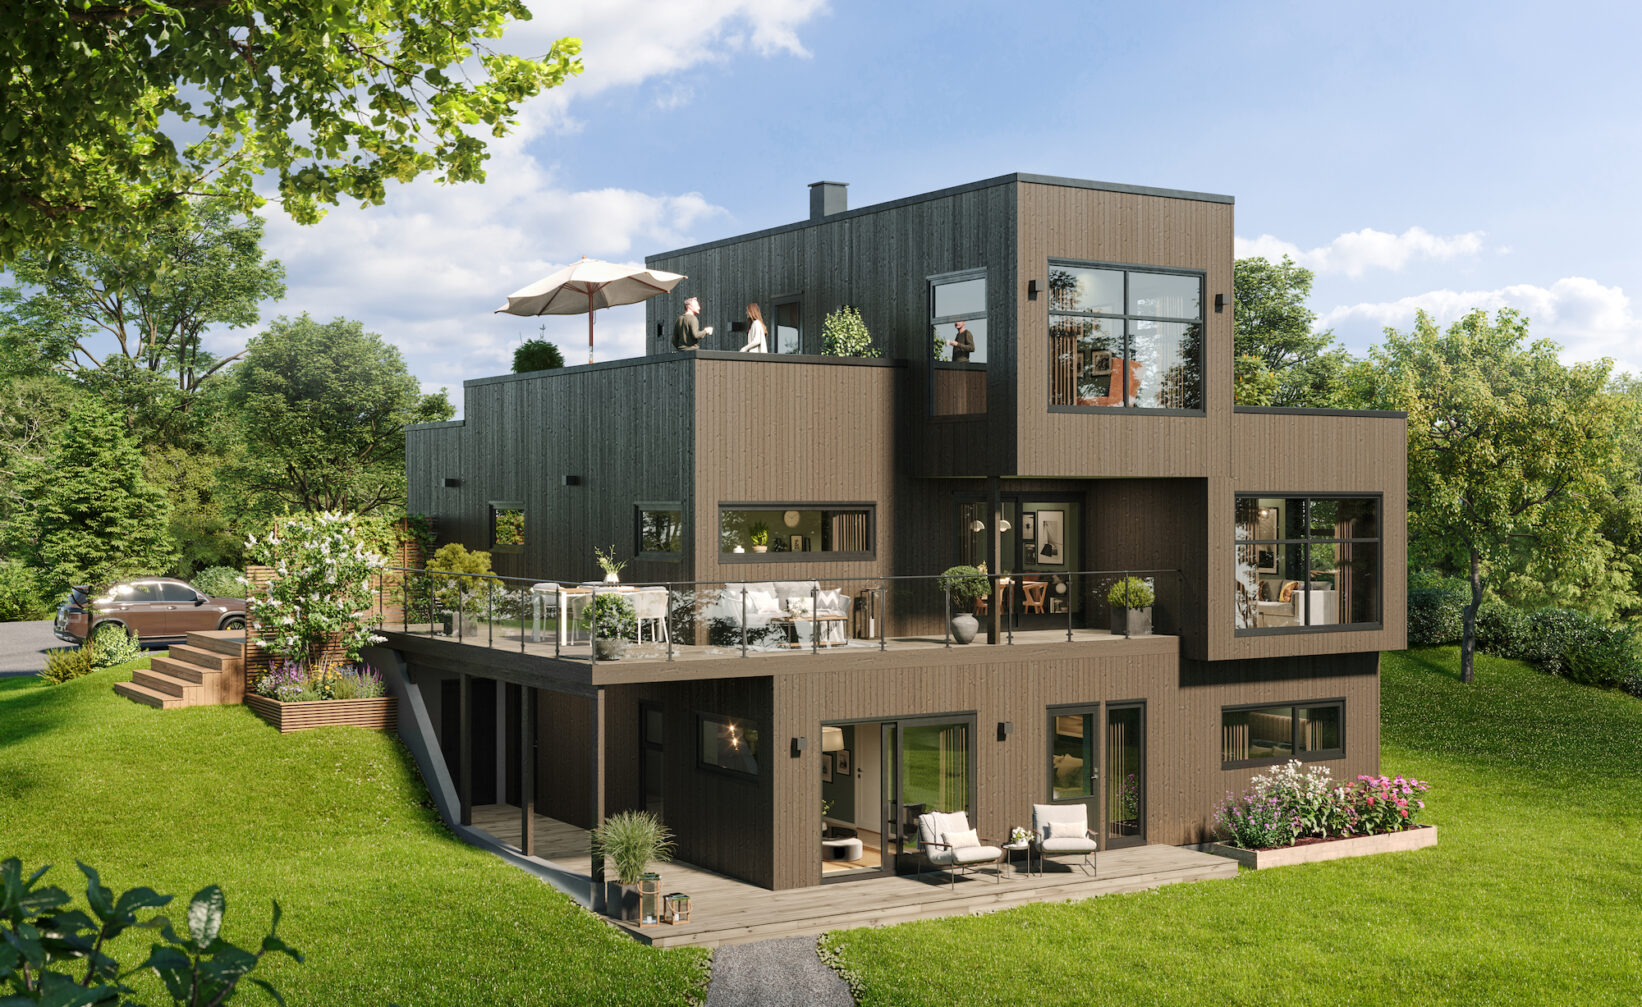 et moderne hus på en grønn plen.